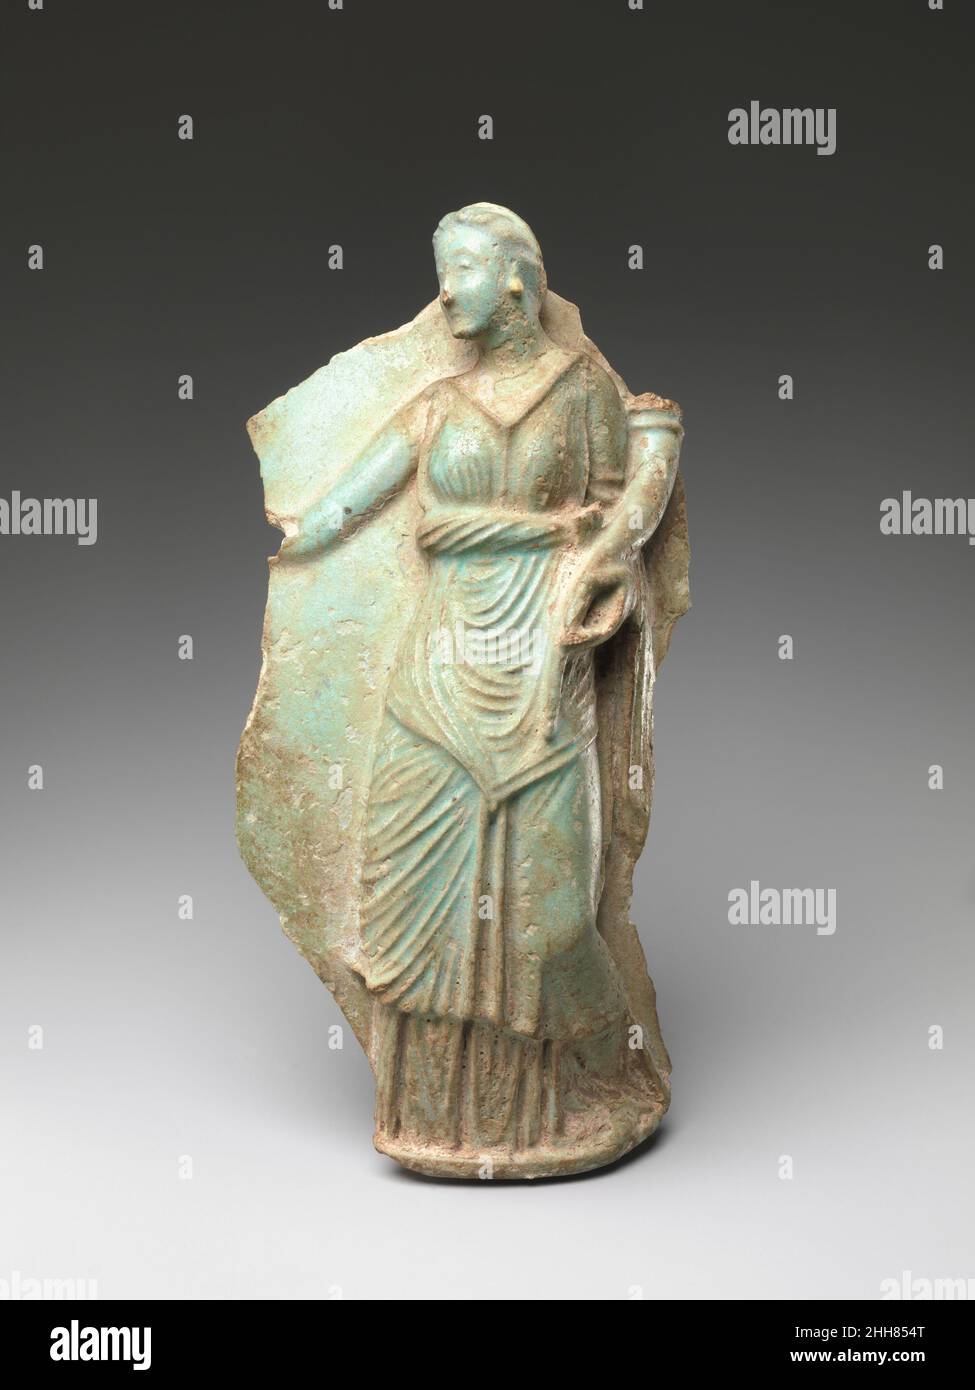 Fragment einer Vase, die Berenike II. 246–221 v. Chr. darstellt.ptolemäische Periode Ptolemäische oinochoai (Weinkannen) mit Porträts der Königinnen waren Trankopfer, die mit dem königlichen Kult verbunden waren, höchstwahrscheinlich mit der Arsinoeia, dem Fest, das zu Ehren von Arsinoe II. Gegründet wurde Auf vollständigen Beispielen gießt die Figur der Königin ein Trankopfer auf einen Opferaltar mit einer heiligen Säule, die hinter ihr steht, eine Szene, die darauf hindeutet, dass Unterweltgötter angesprochen werden, möglicherweise Grabgötter. Der rituelle Einsatz von Treue und stilistischen Merkmalen sind Indikatoren für den Einfluss der traditionellen ägyptischen Kultur auf die Ty Stockfoto